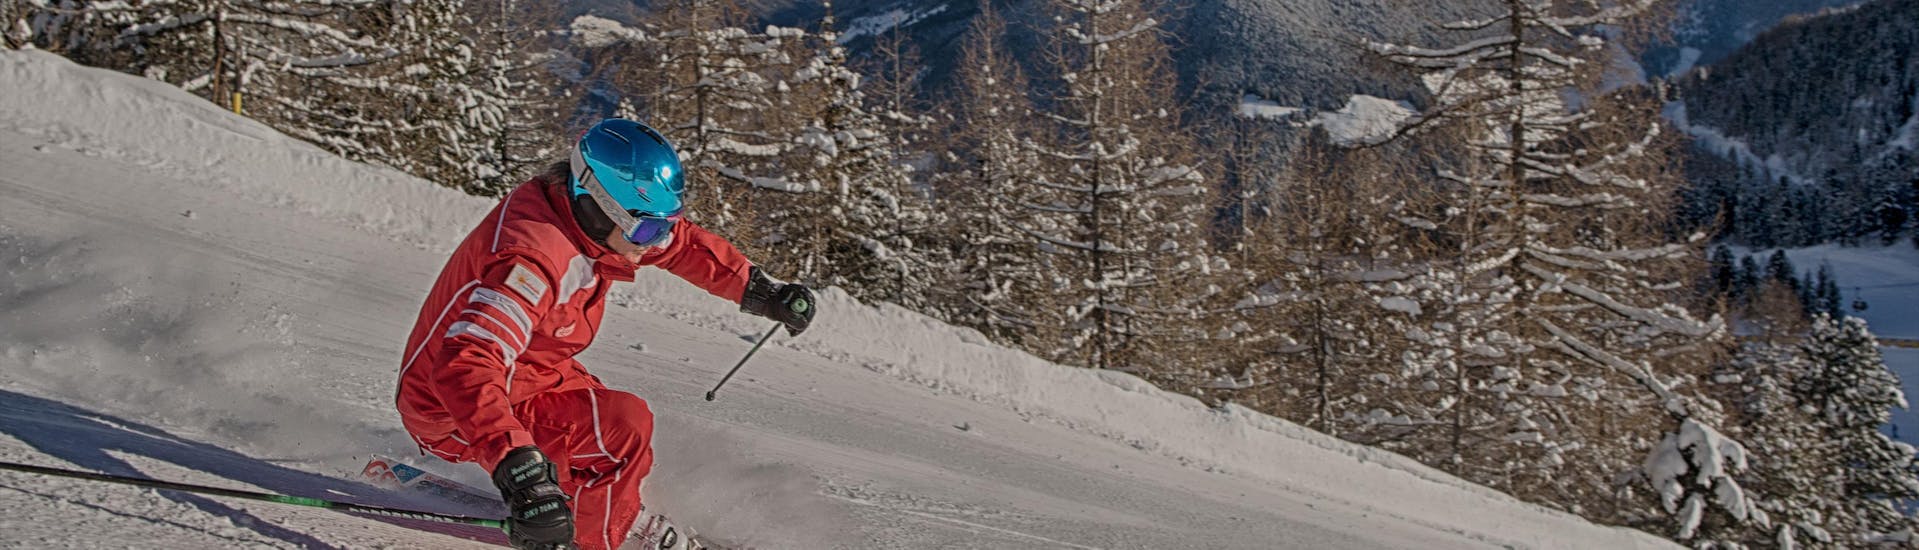 Clases de esquí para adultos a partir de 16 años para avanzados.